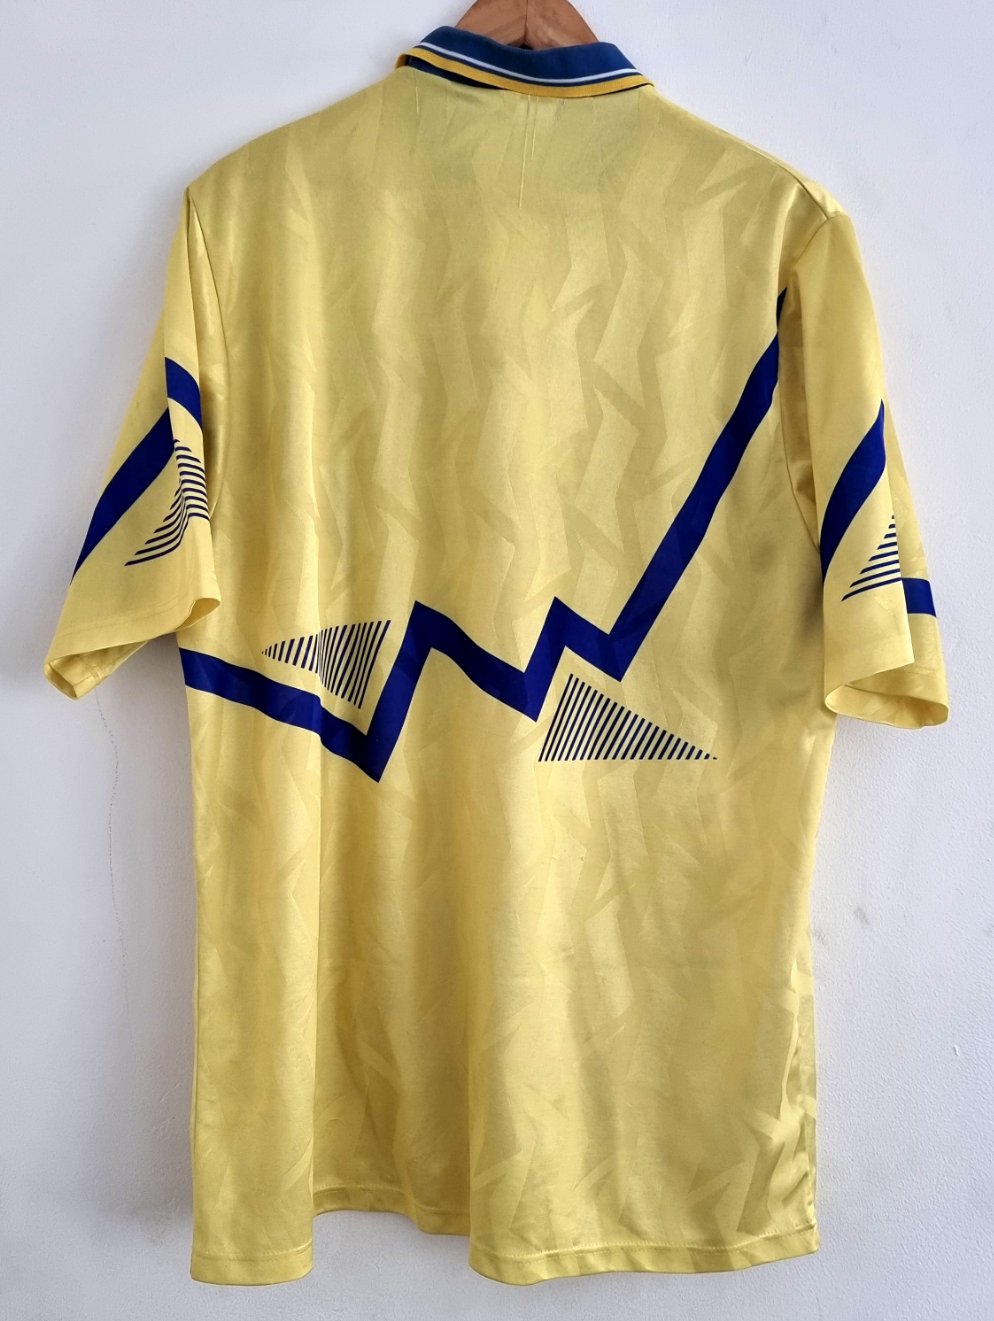 Umbro Everton 90/92 Away Shirt XL